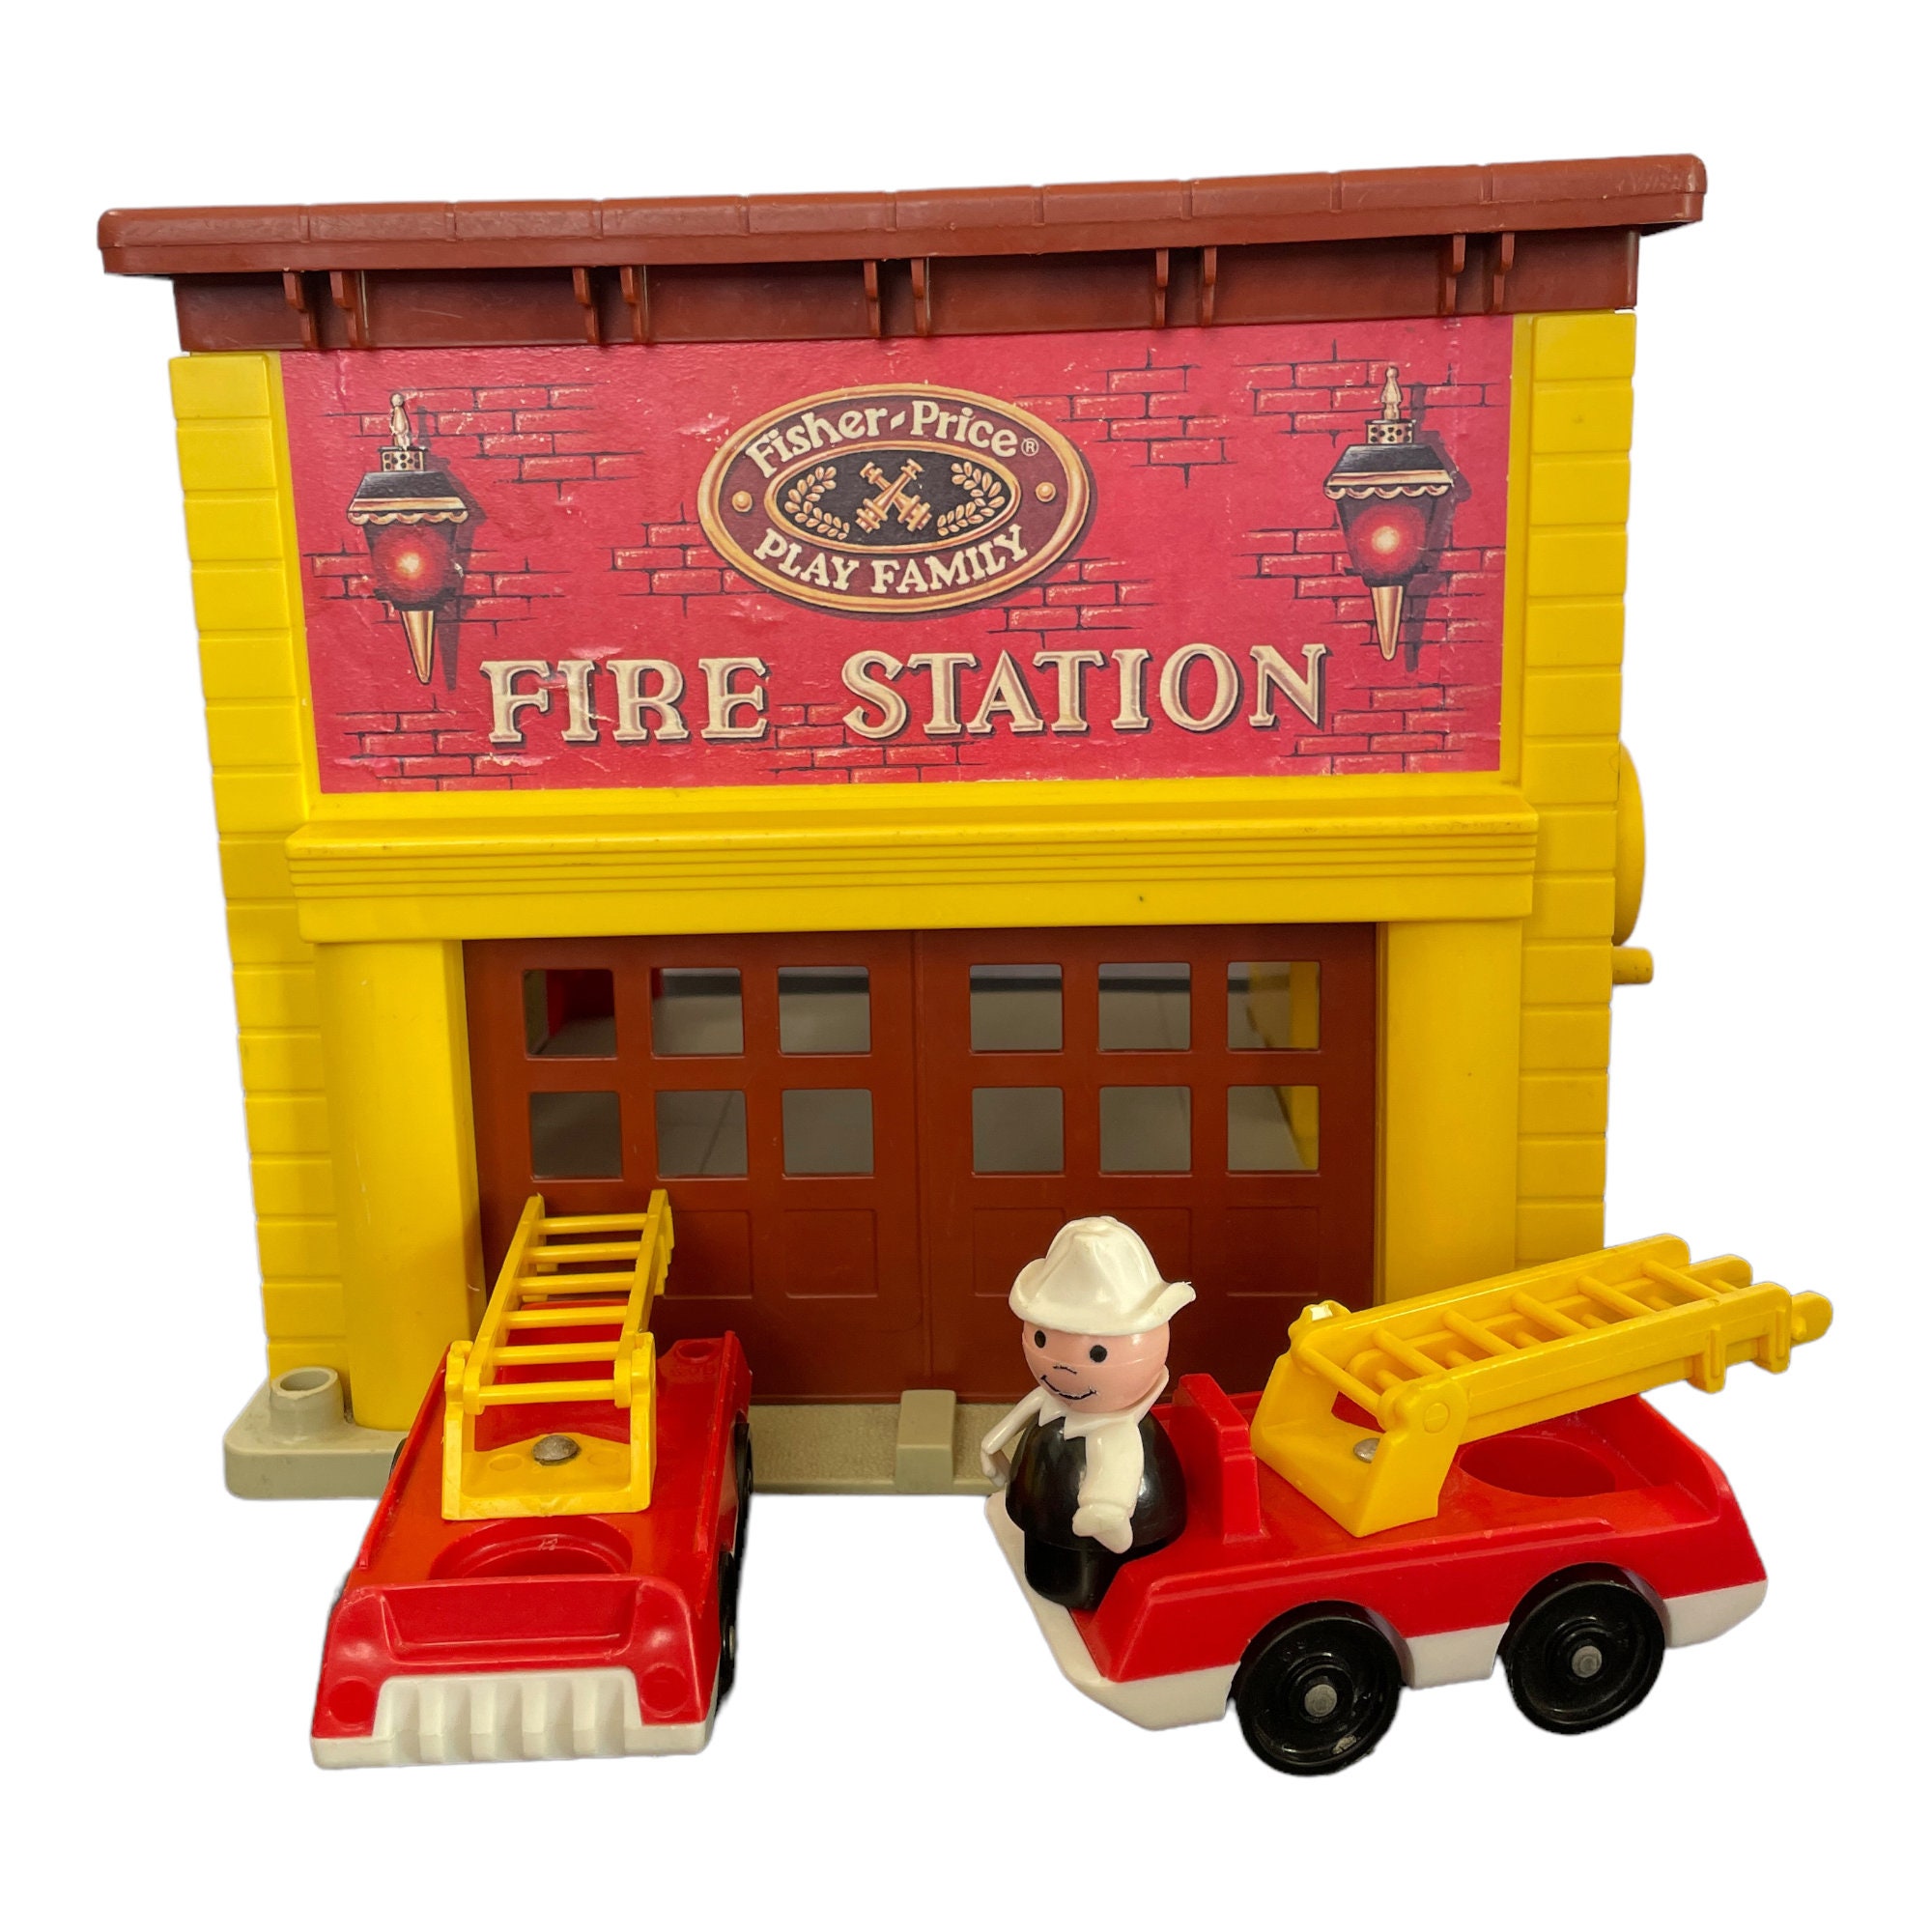 Hélicoptère des pompiers Lego 6531 - jouets rétro jeux de société figurines  et objets vintage